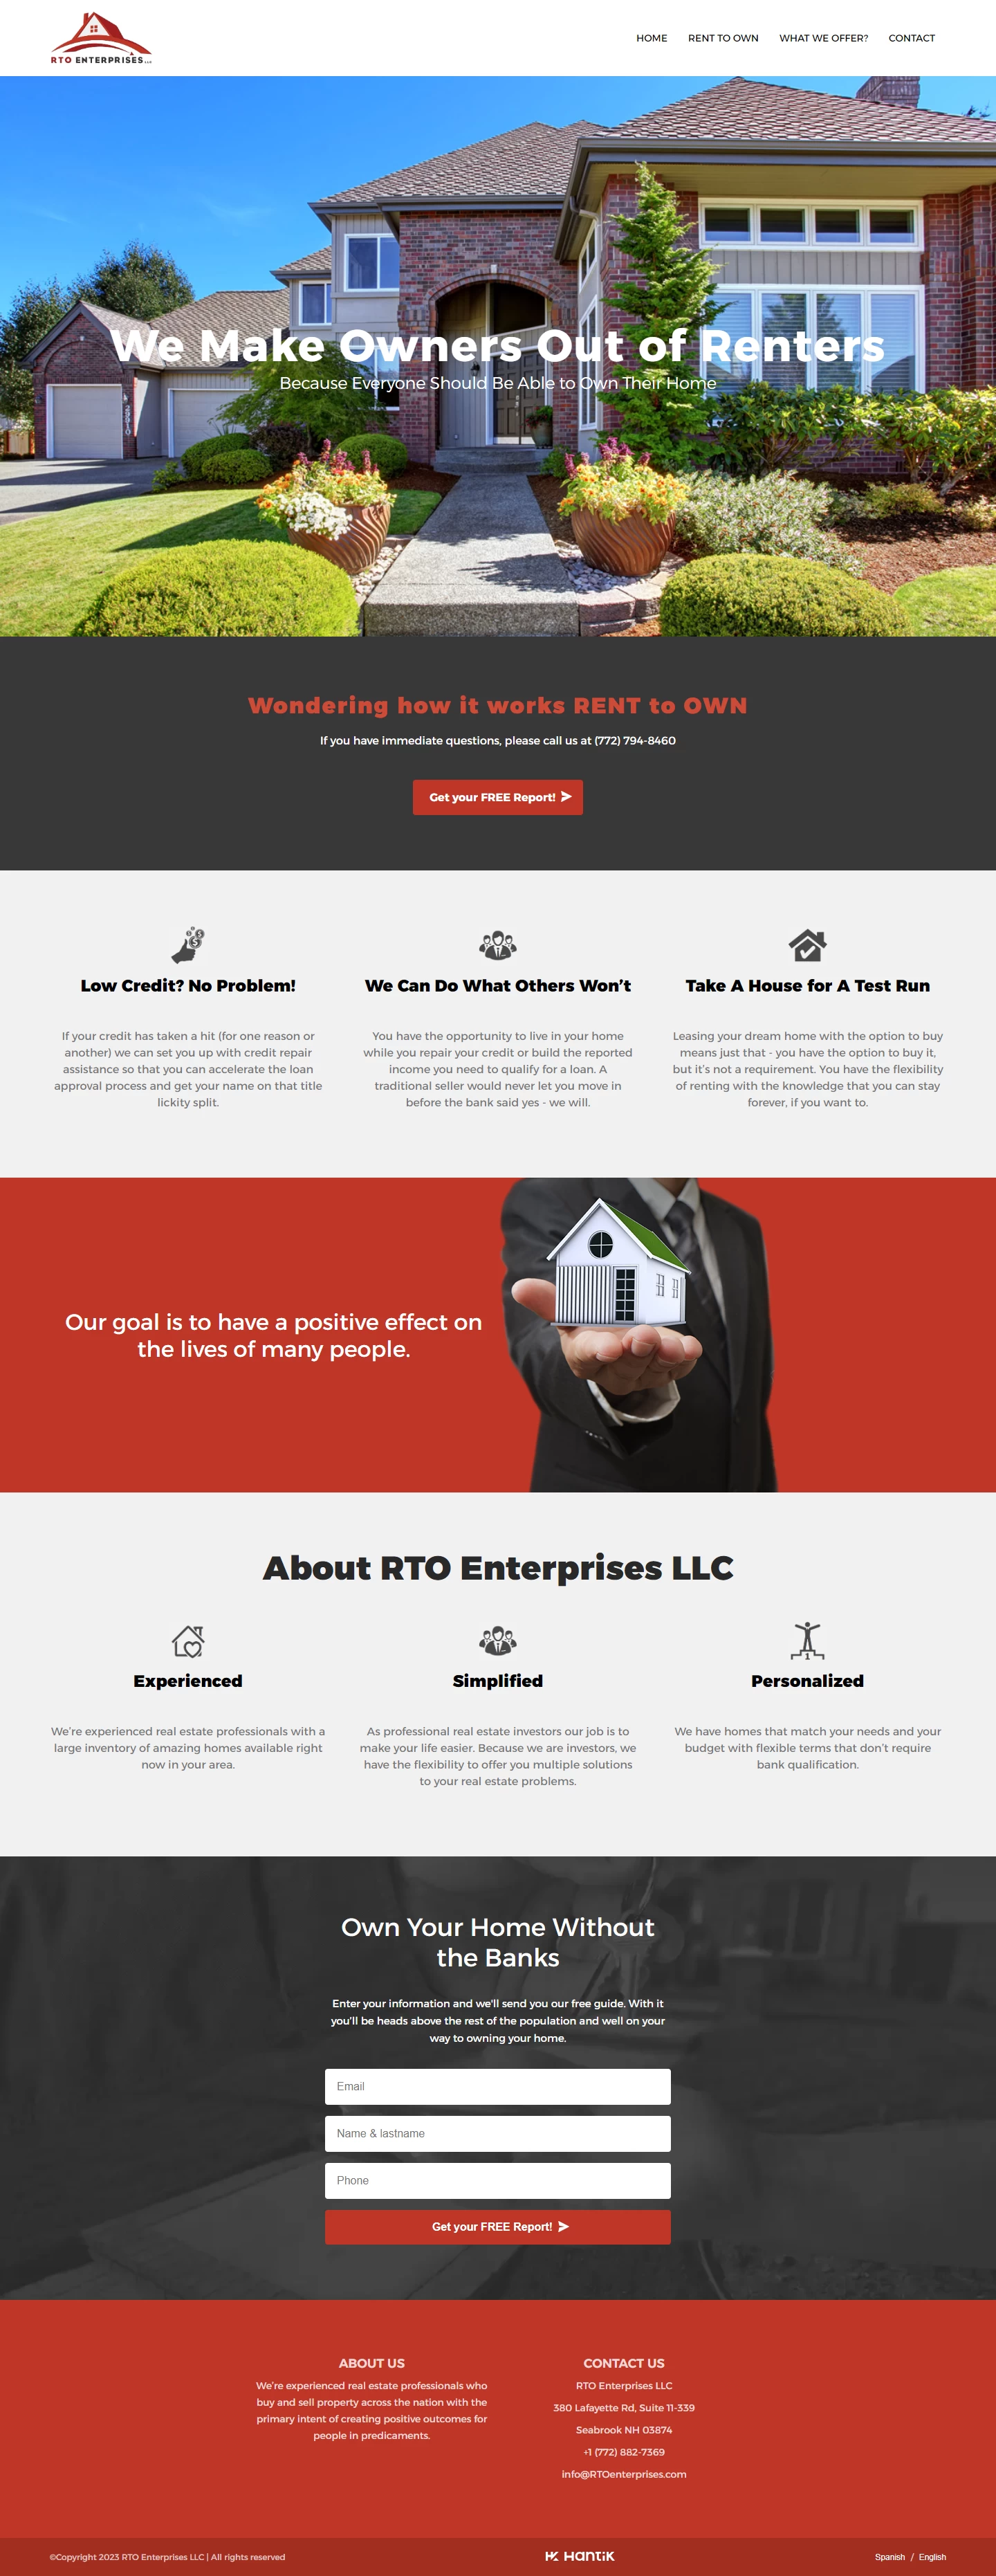 RTO Enterprises